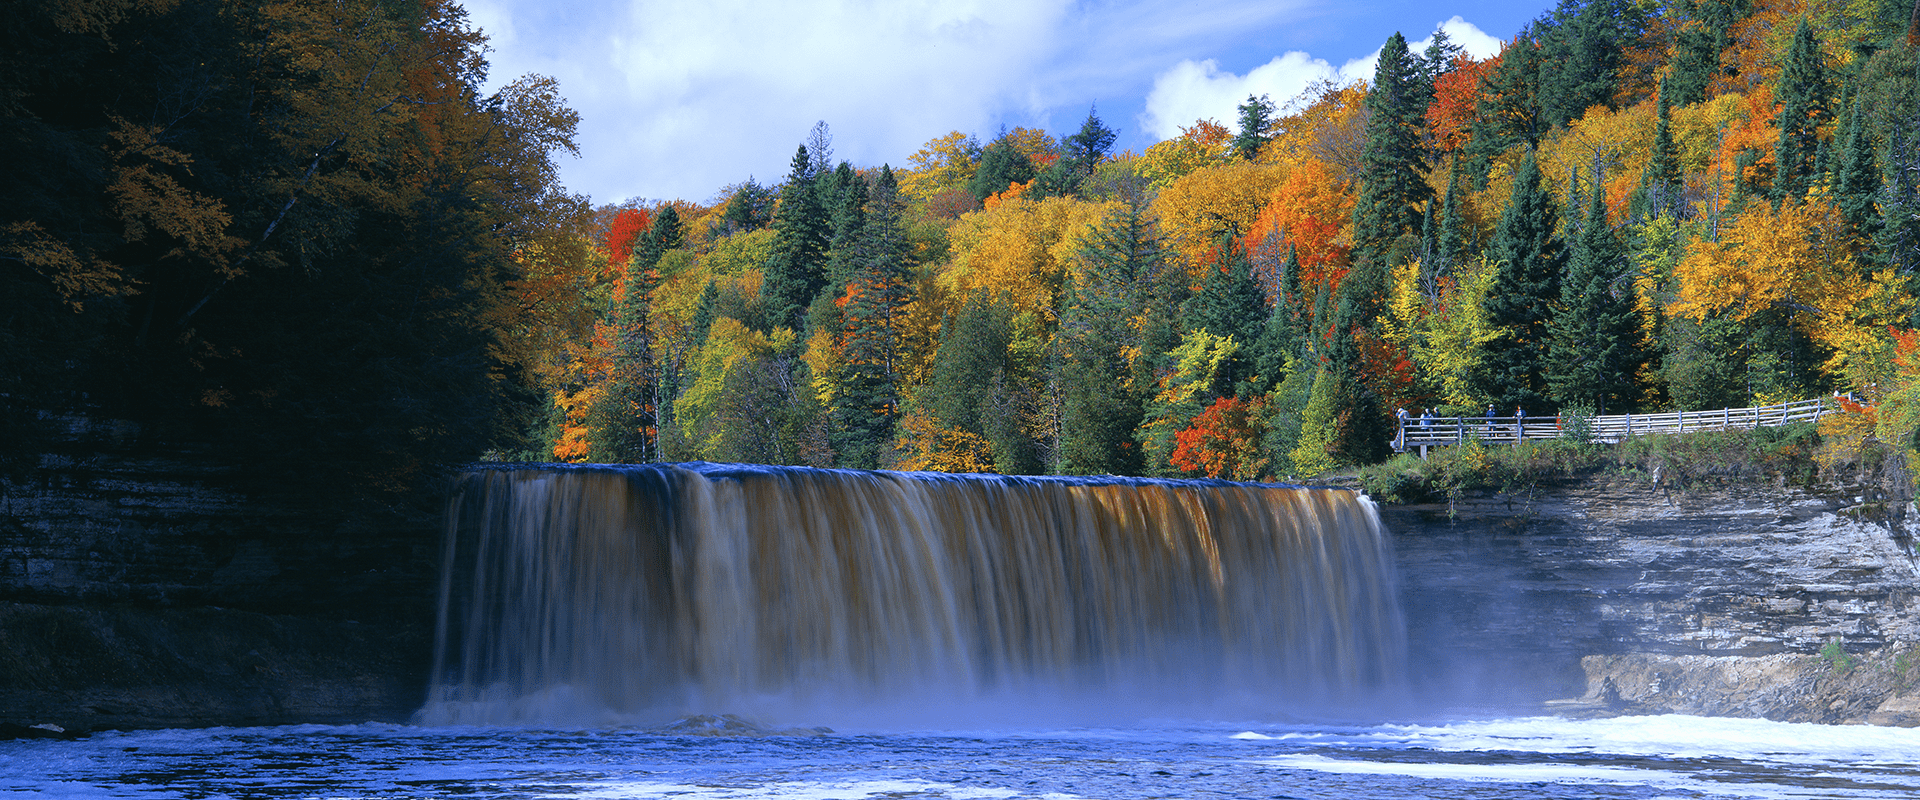 Michigan Upper Peninsula fall